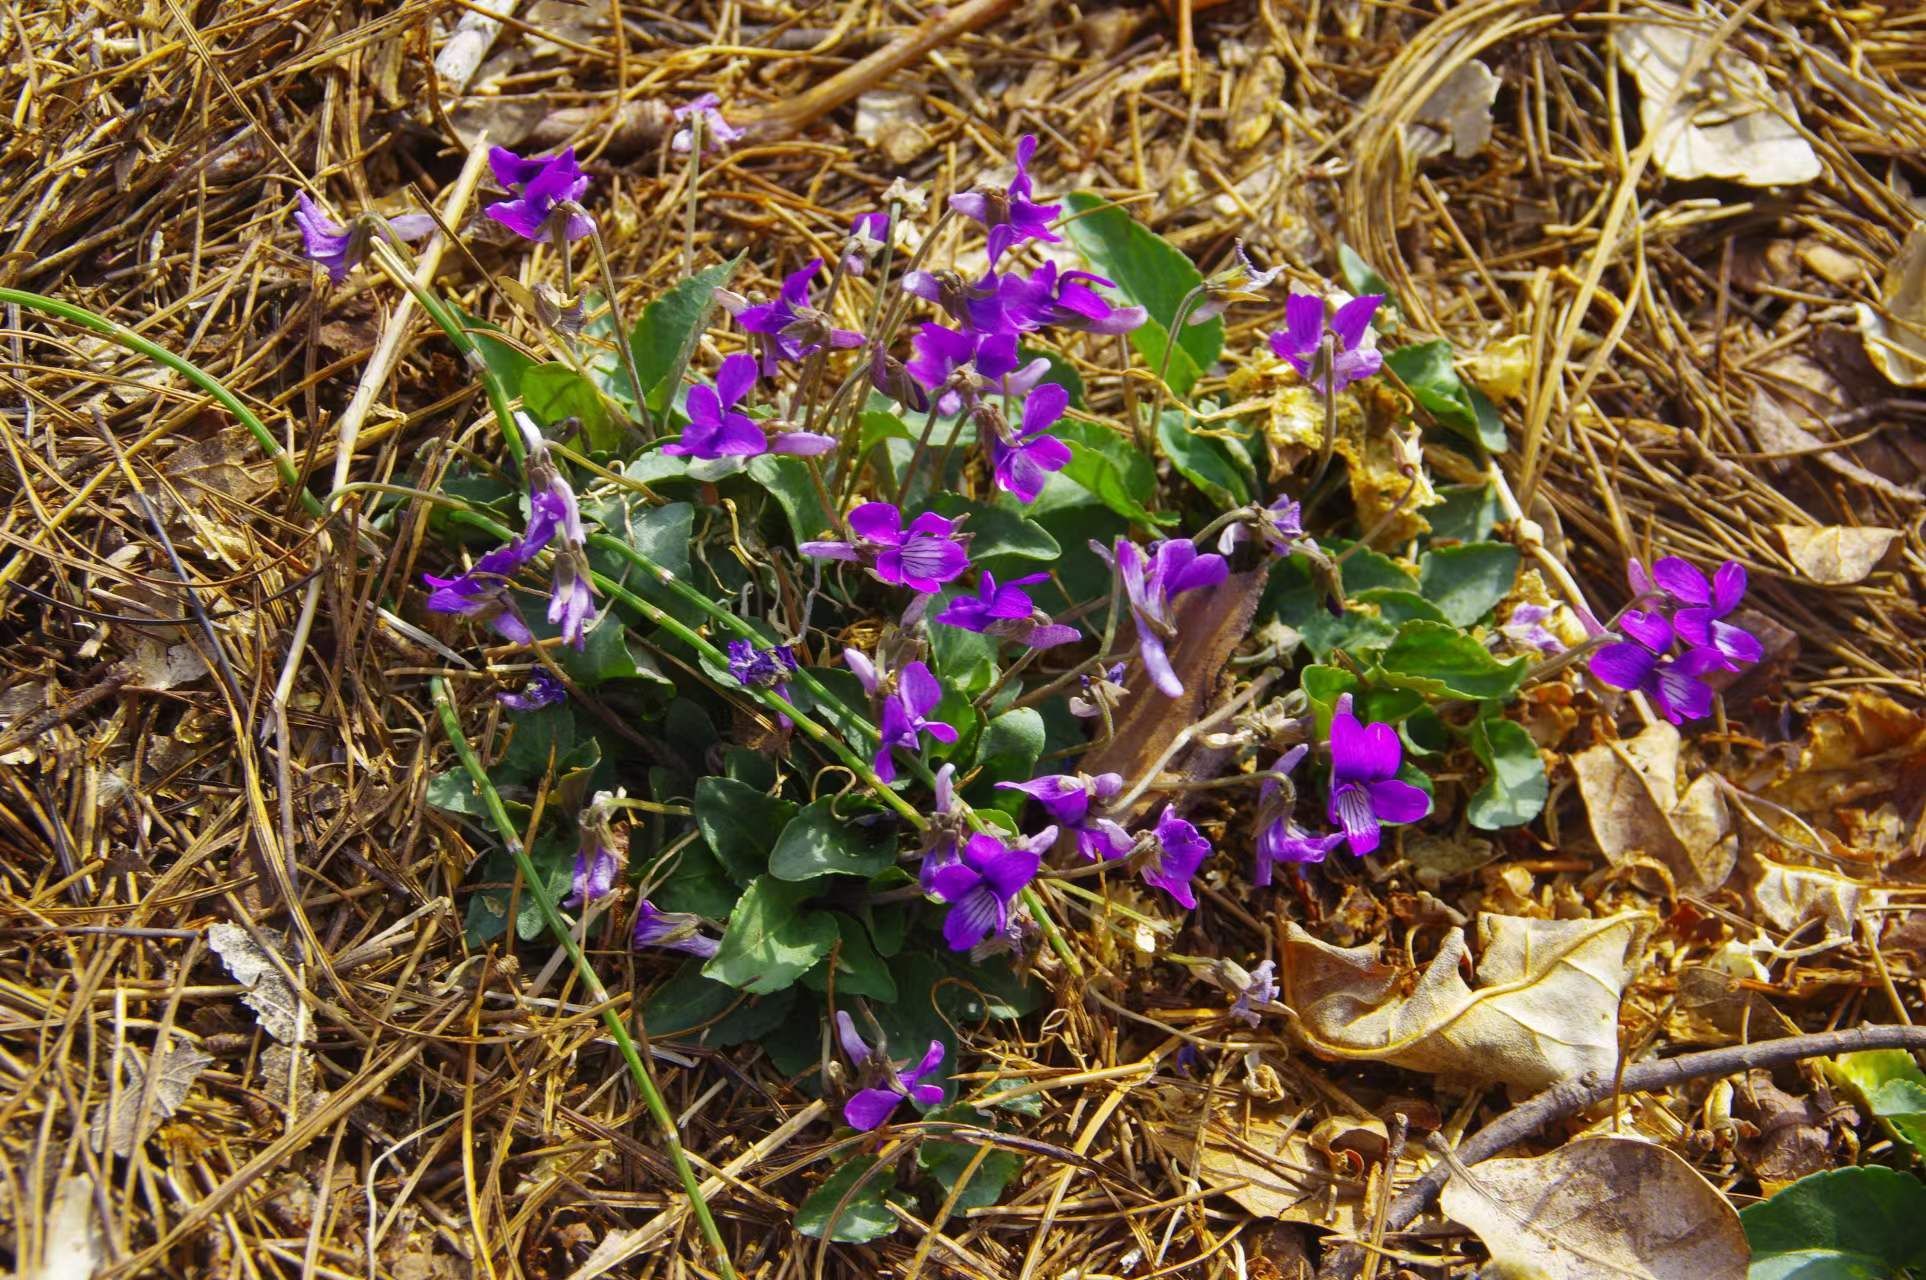 紫花地丁图片_紫花地丁的花朵图片大全 - 花卉网